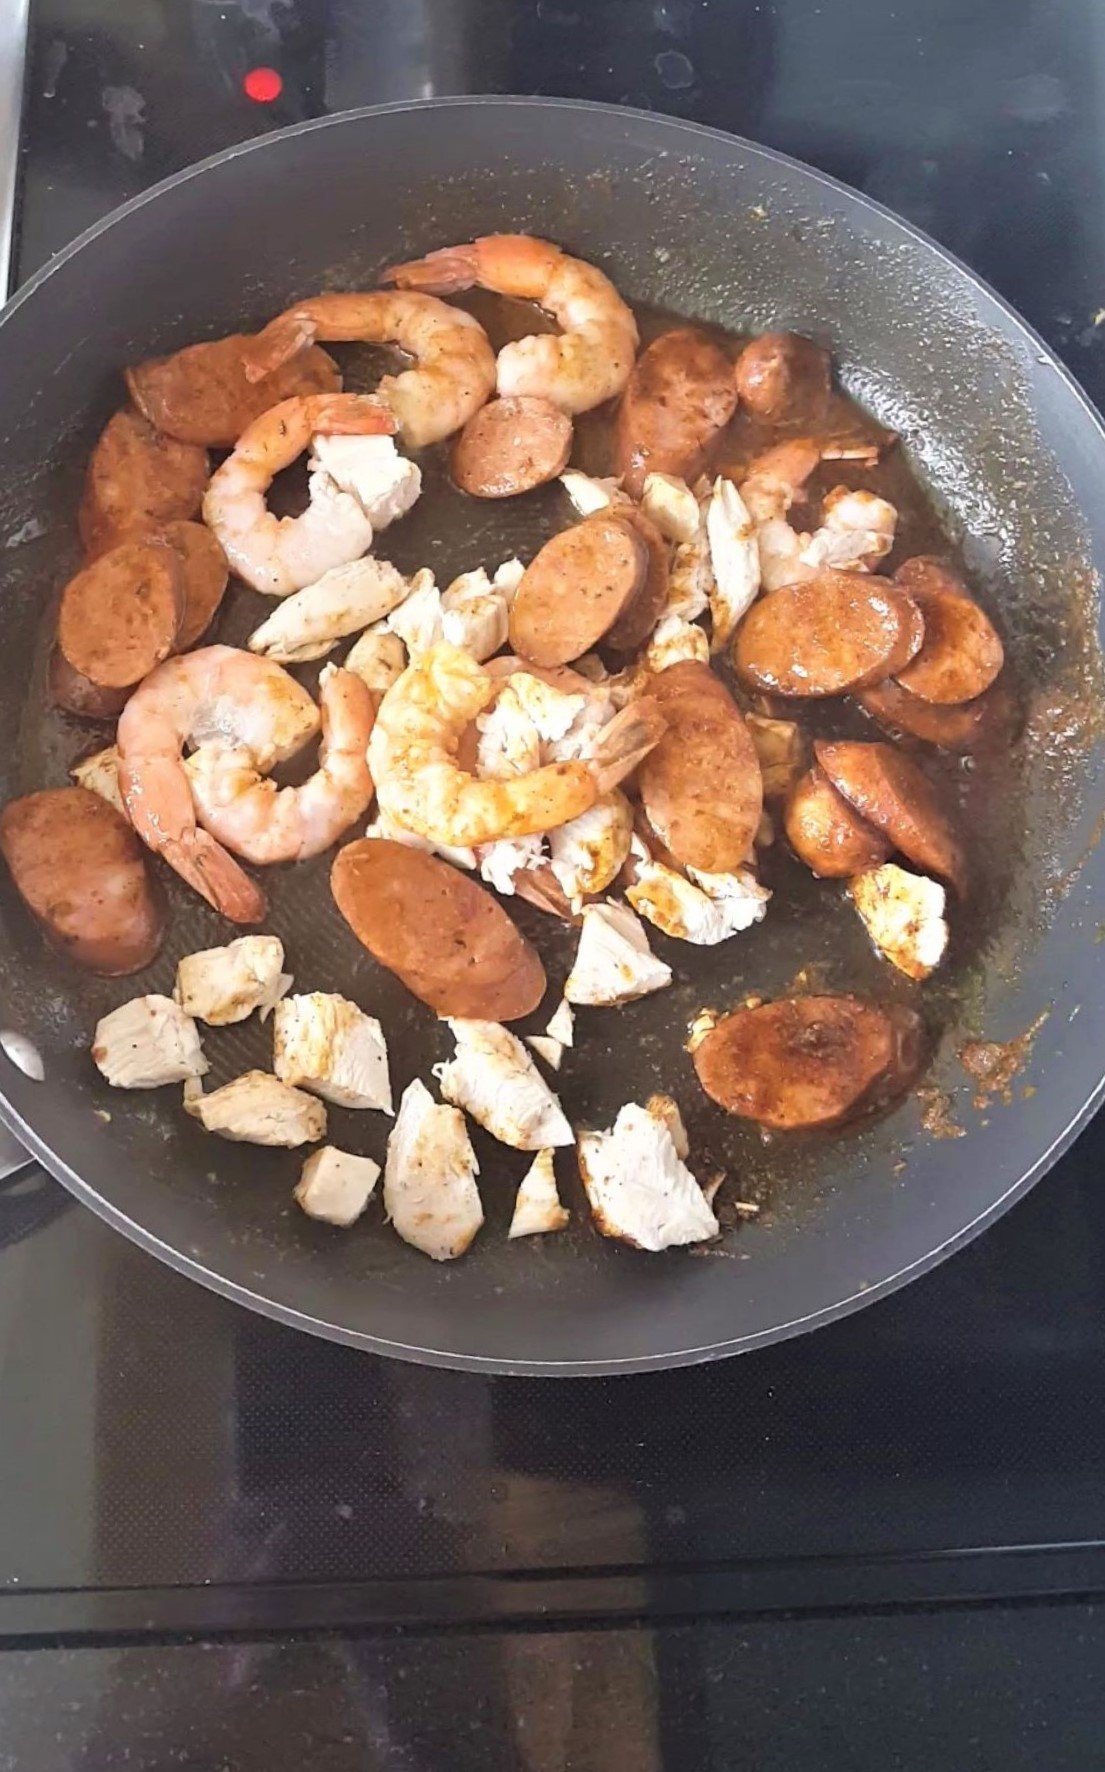 Pan of sausage, chicken, shrimp frying